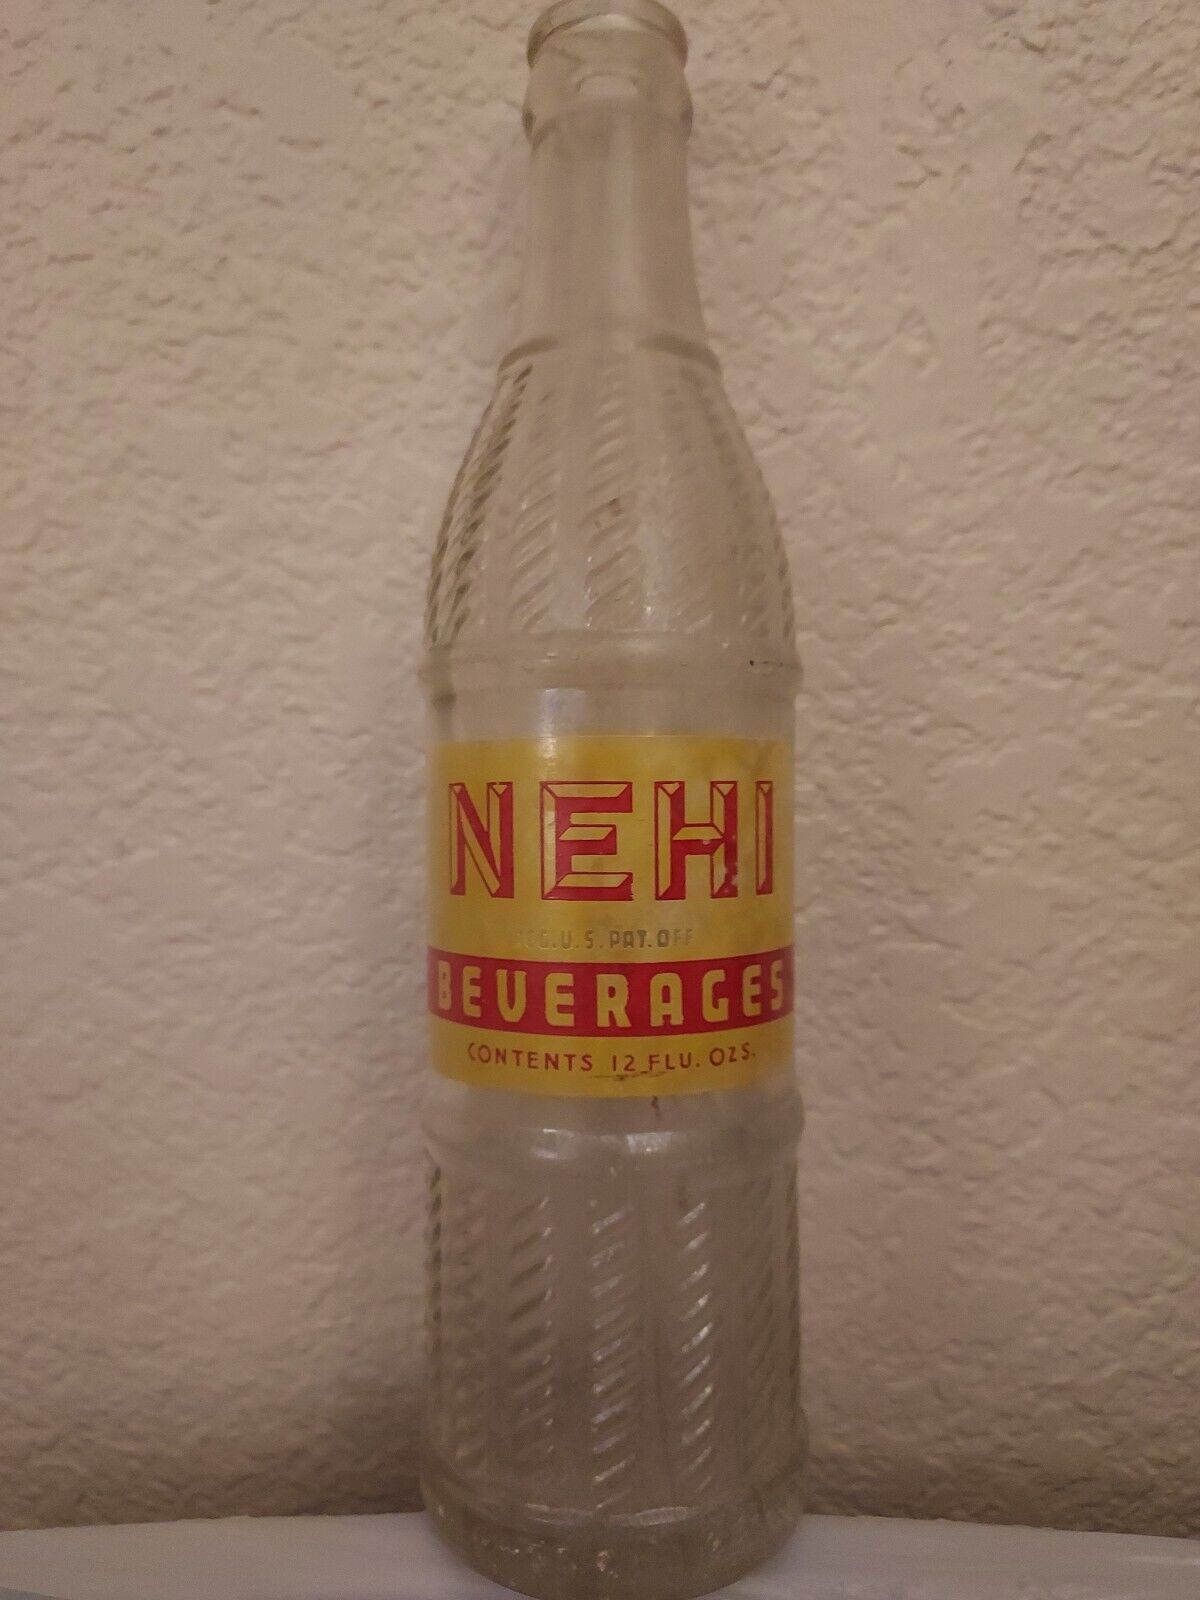 NEHI Beverages Vintage Glass Bottle MAR.3.25